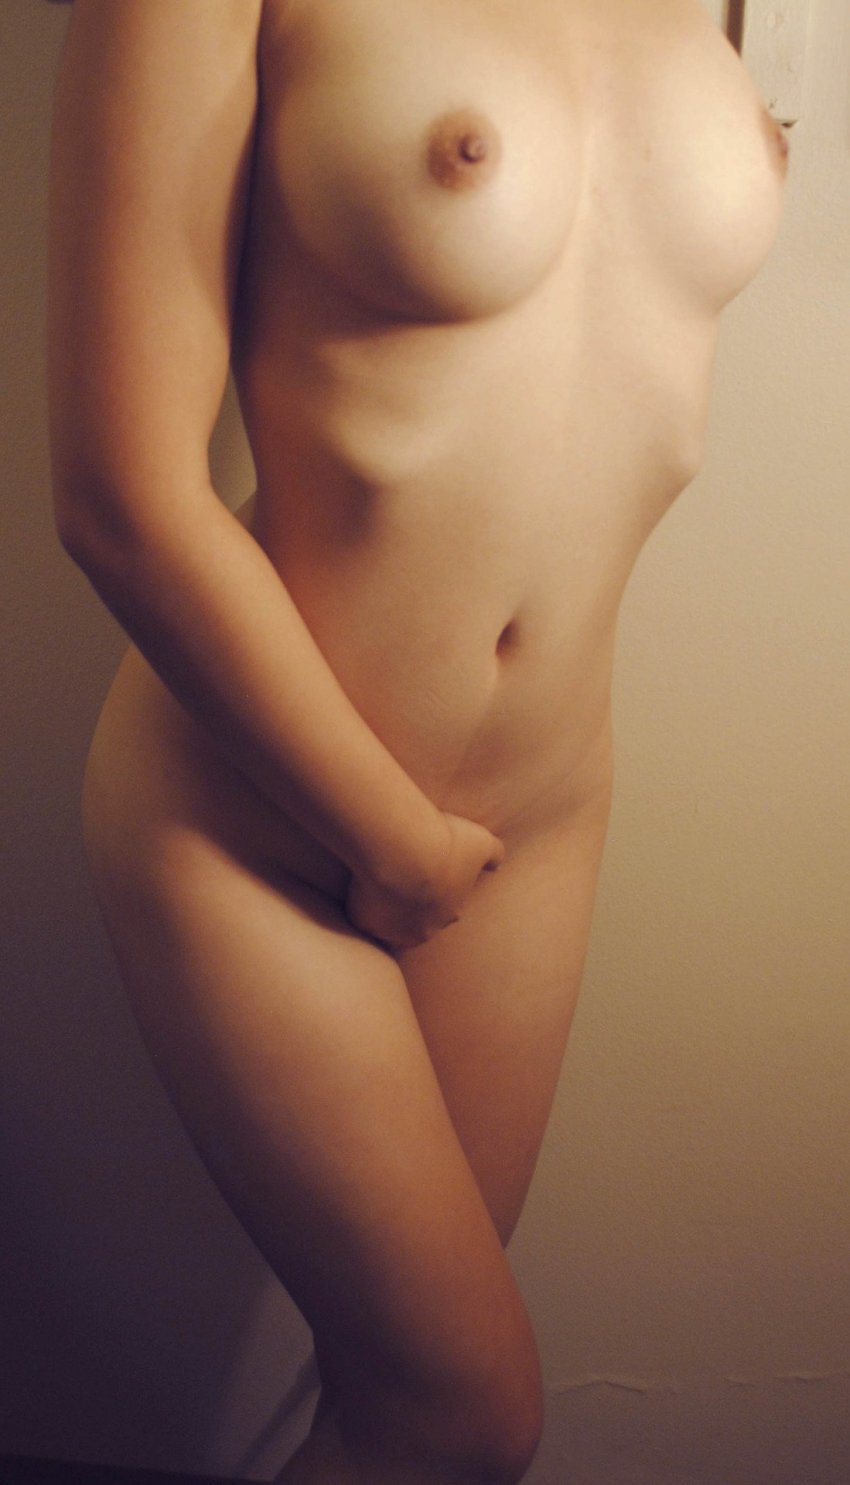 красивые девушки фото с голой грудью 2 размера фото 56